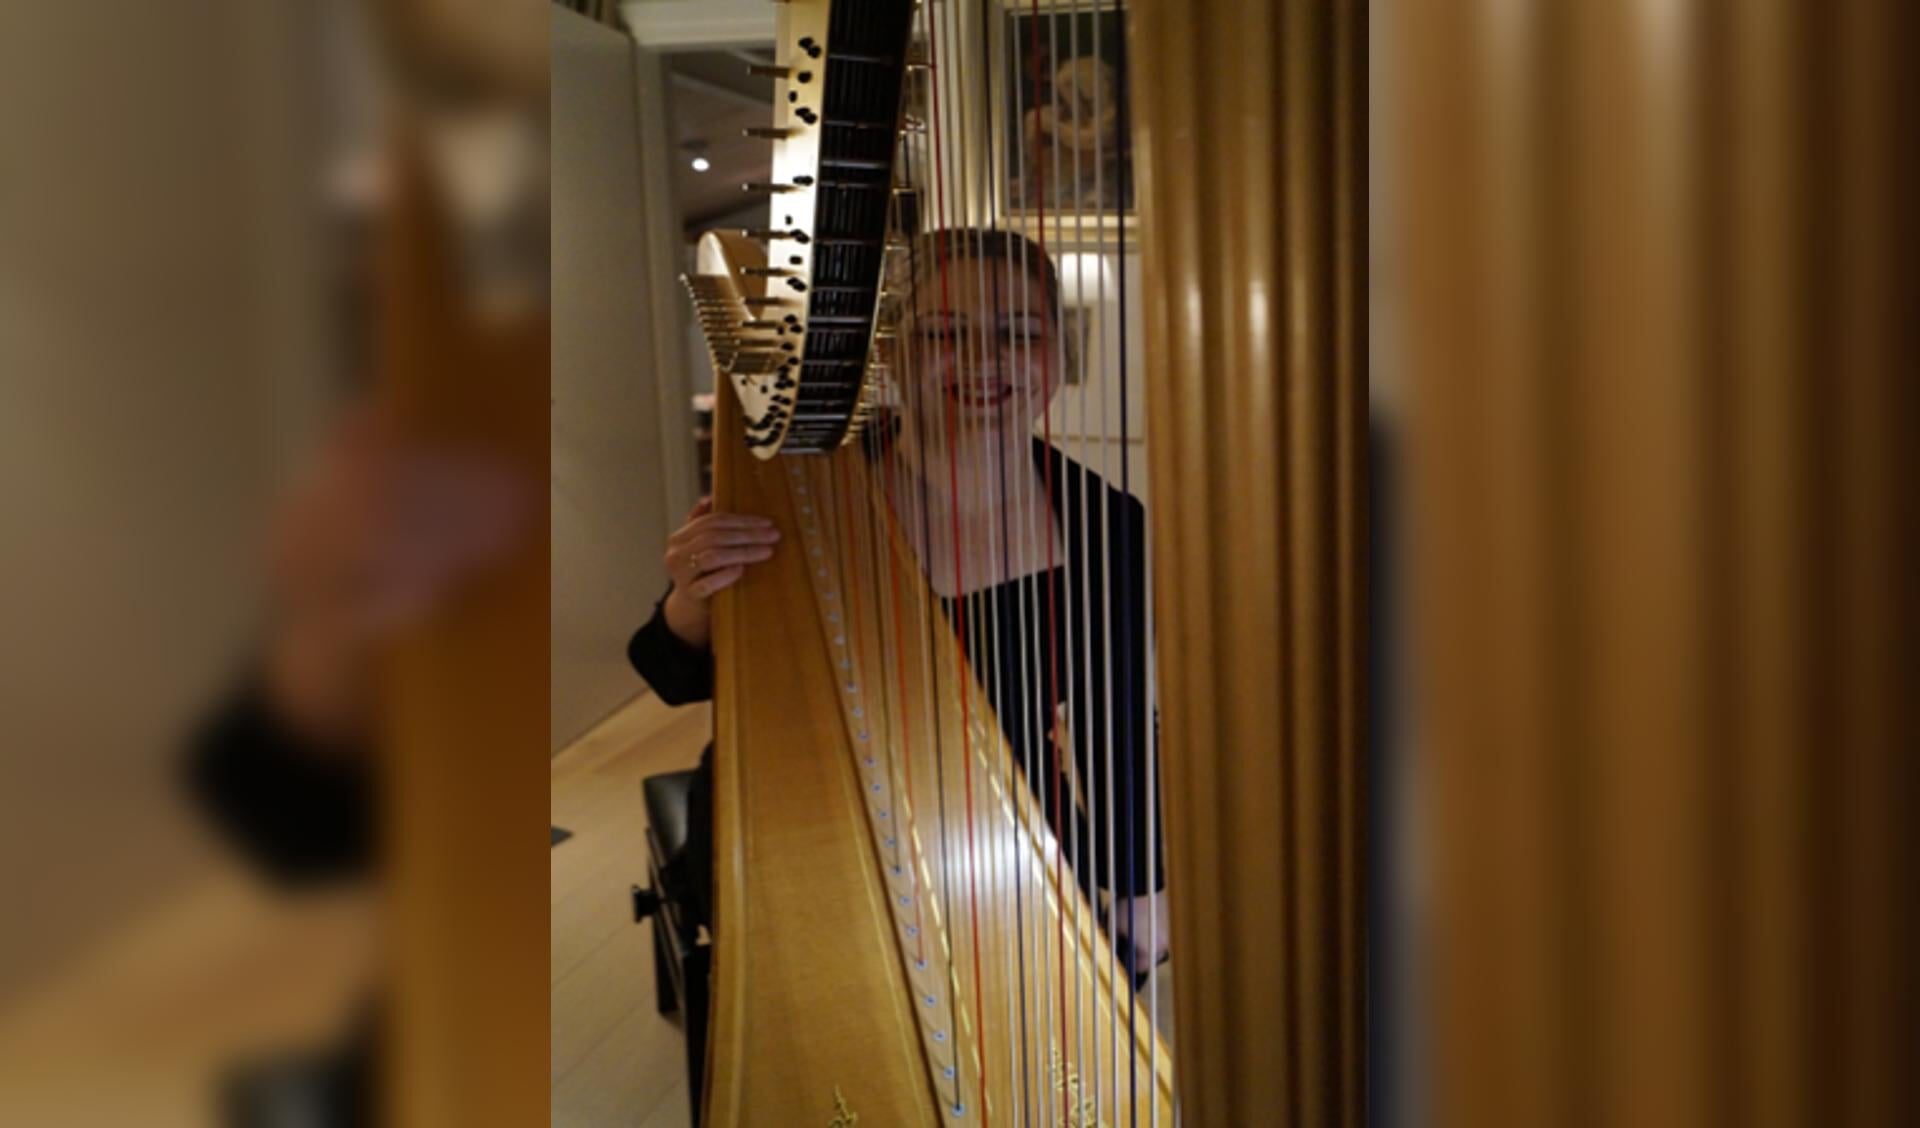 Joukeline Sizoo speelt de harp in een huiskamer op 5 februari 2020. Ze wordt begeleid door Marina Meerson op viool (niet op de foto).